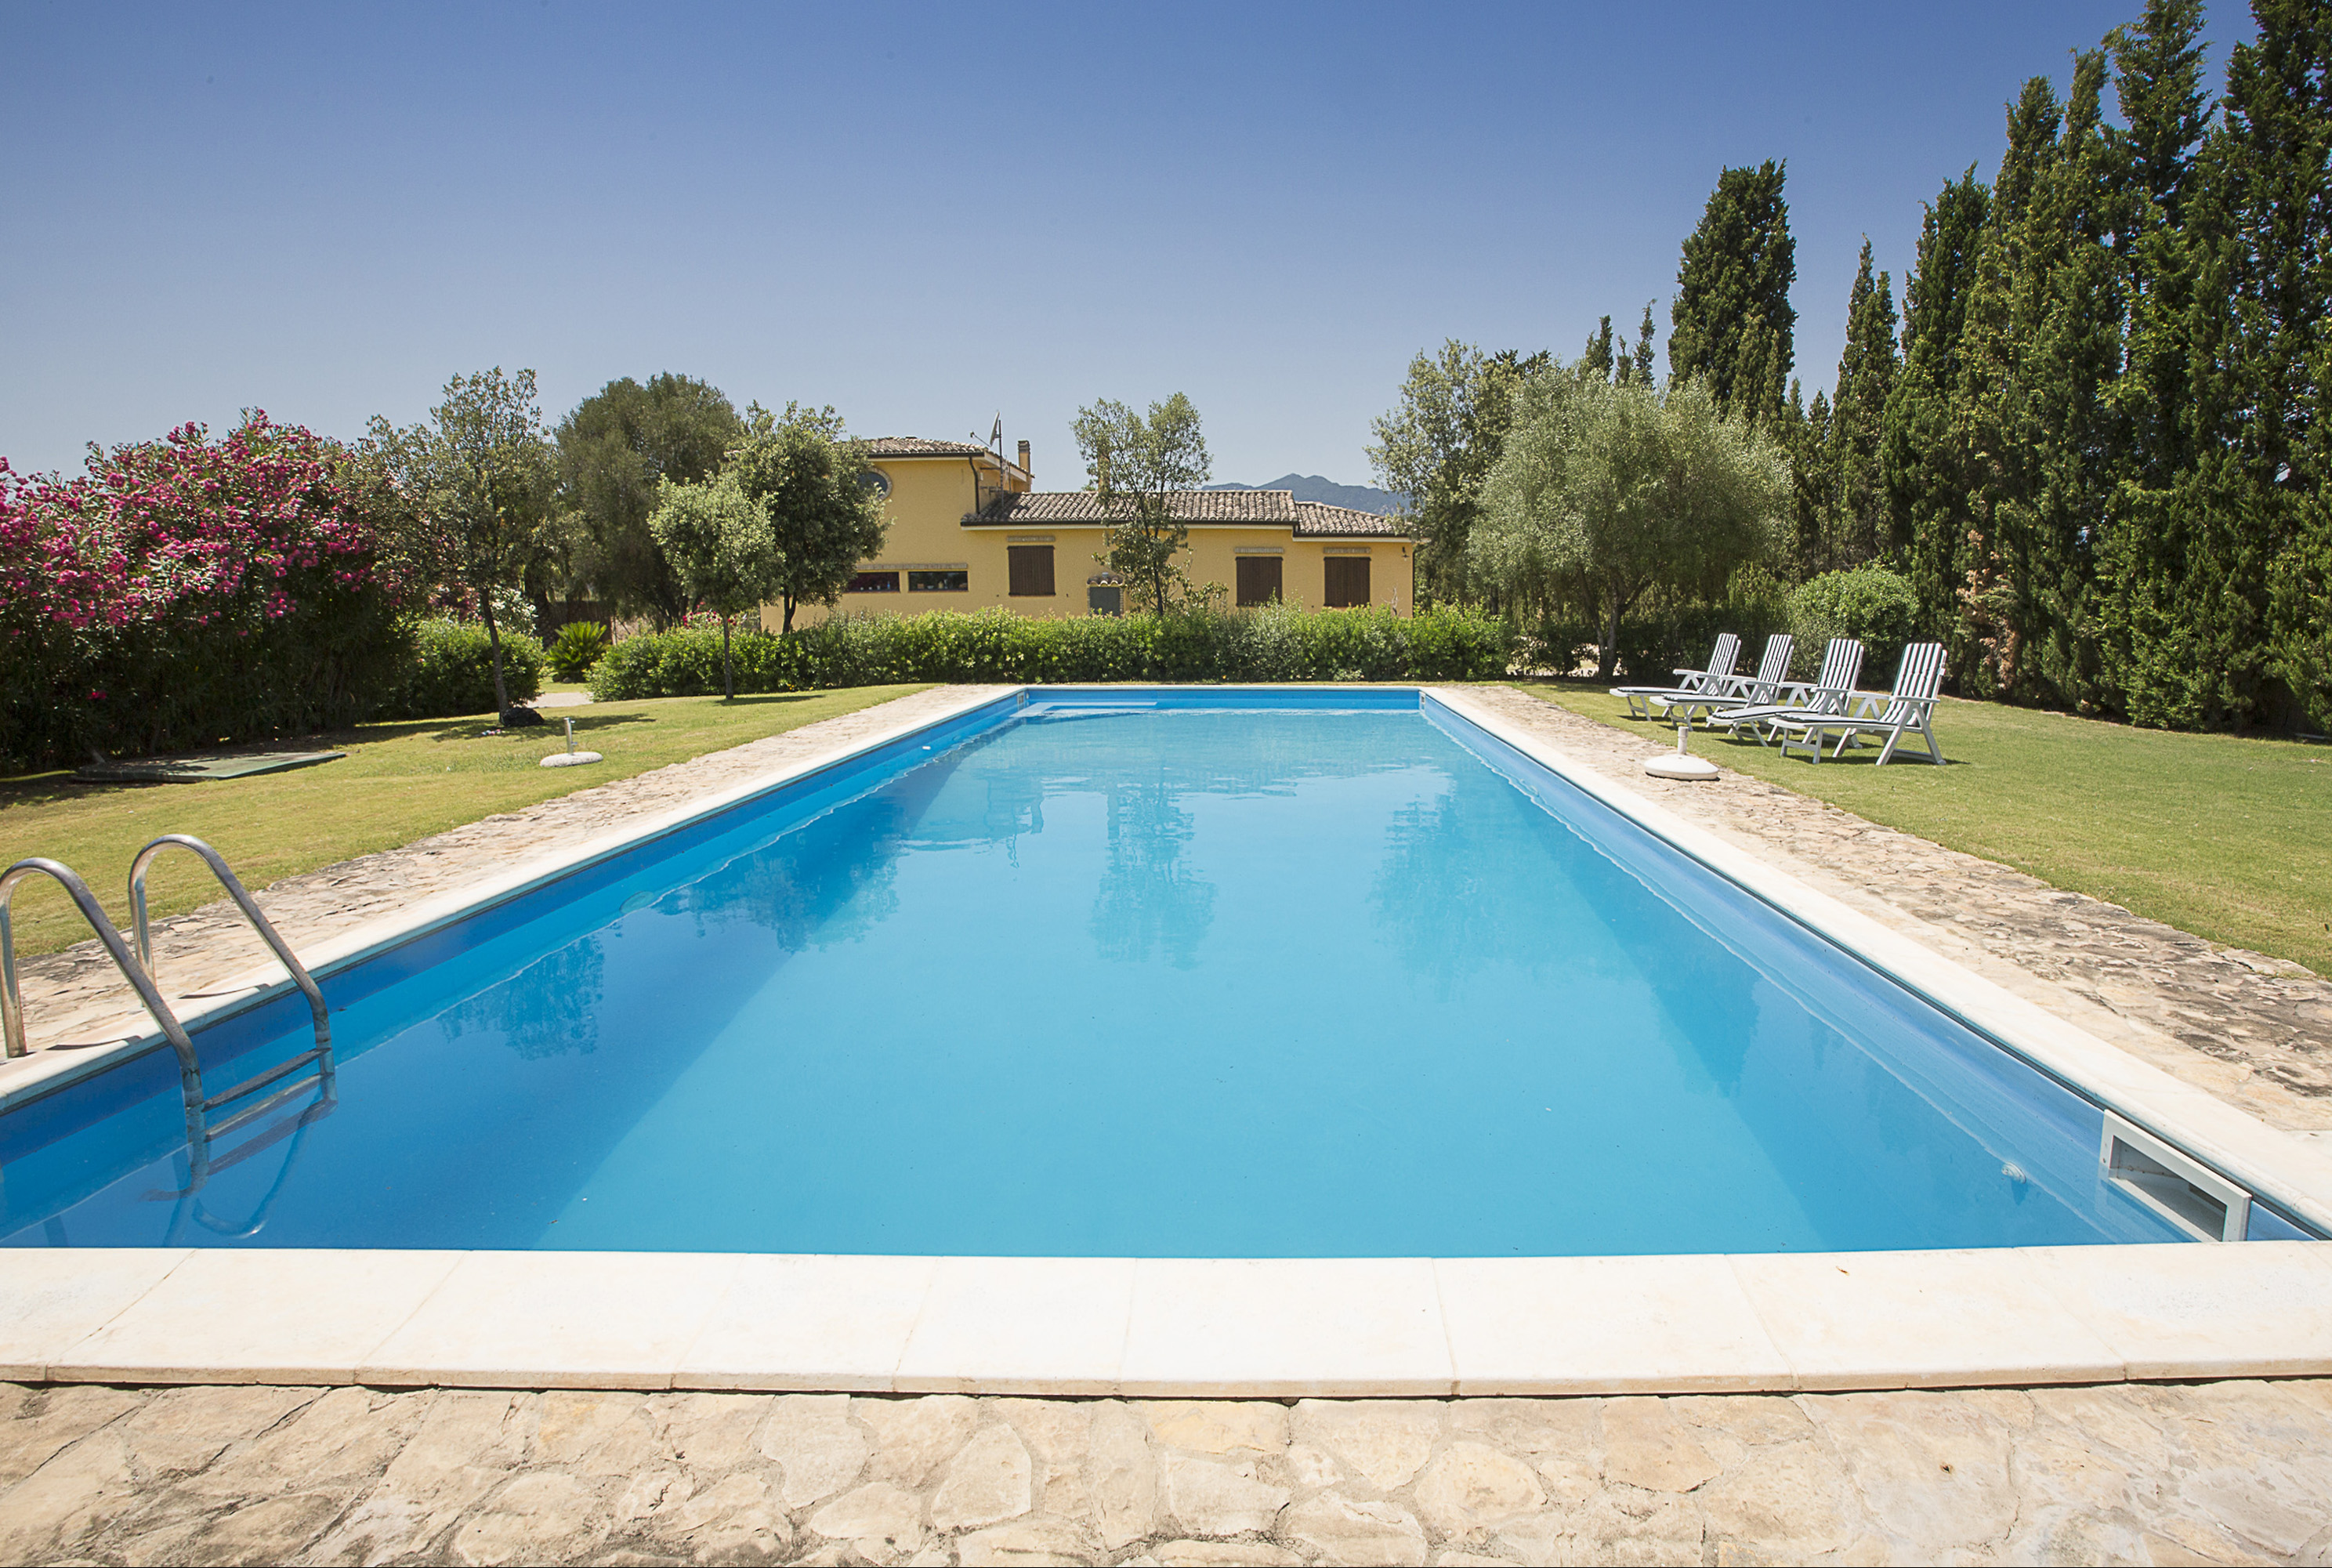 For sale villa in quiet zone Villa San Pietro Sardegna